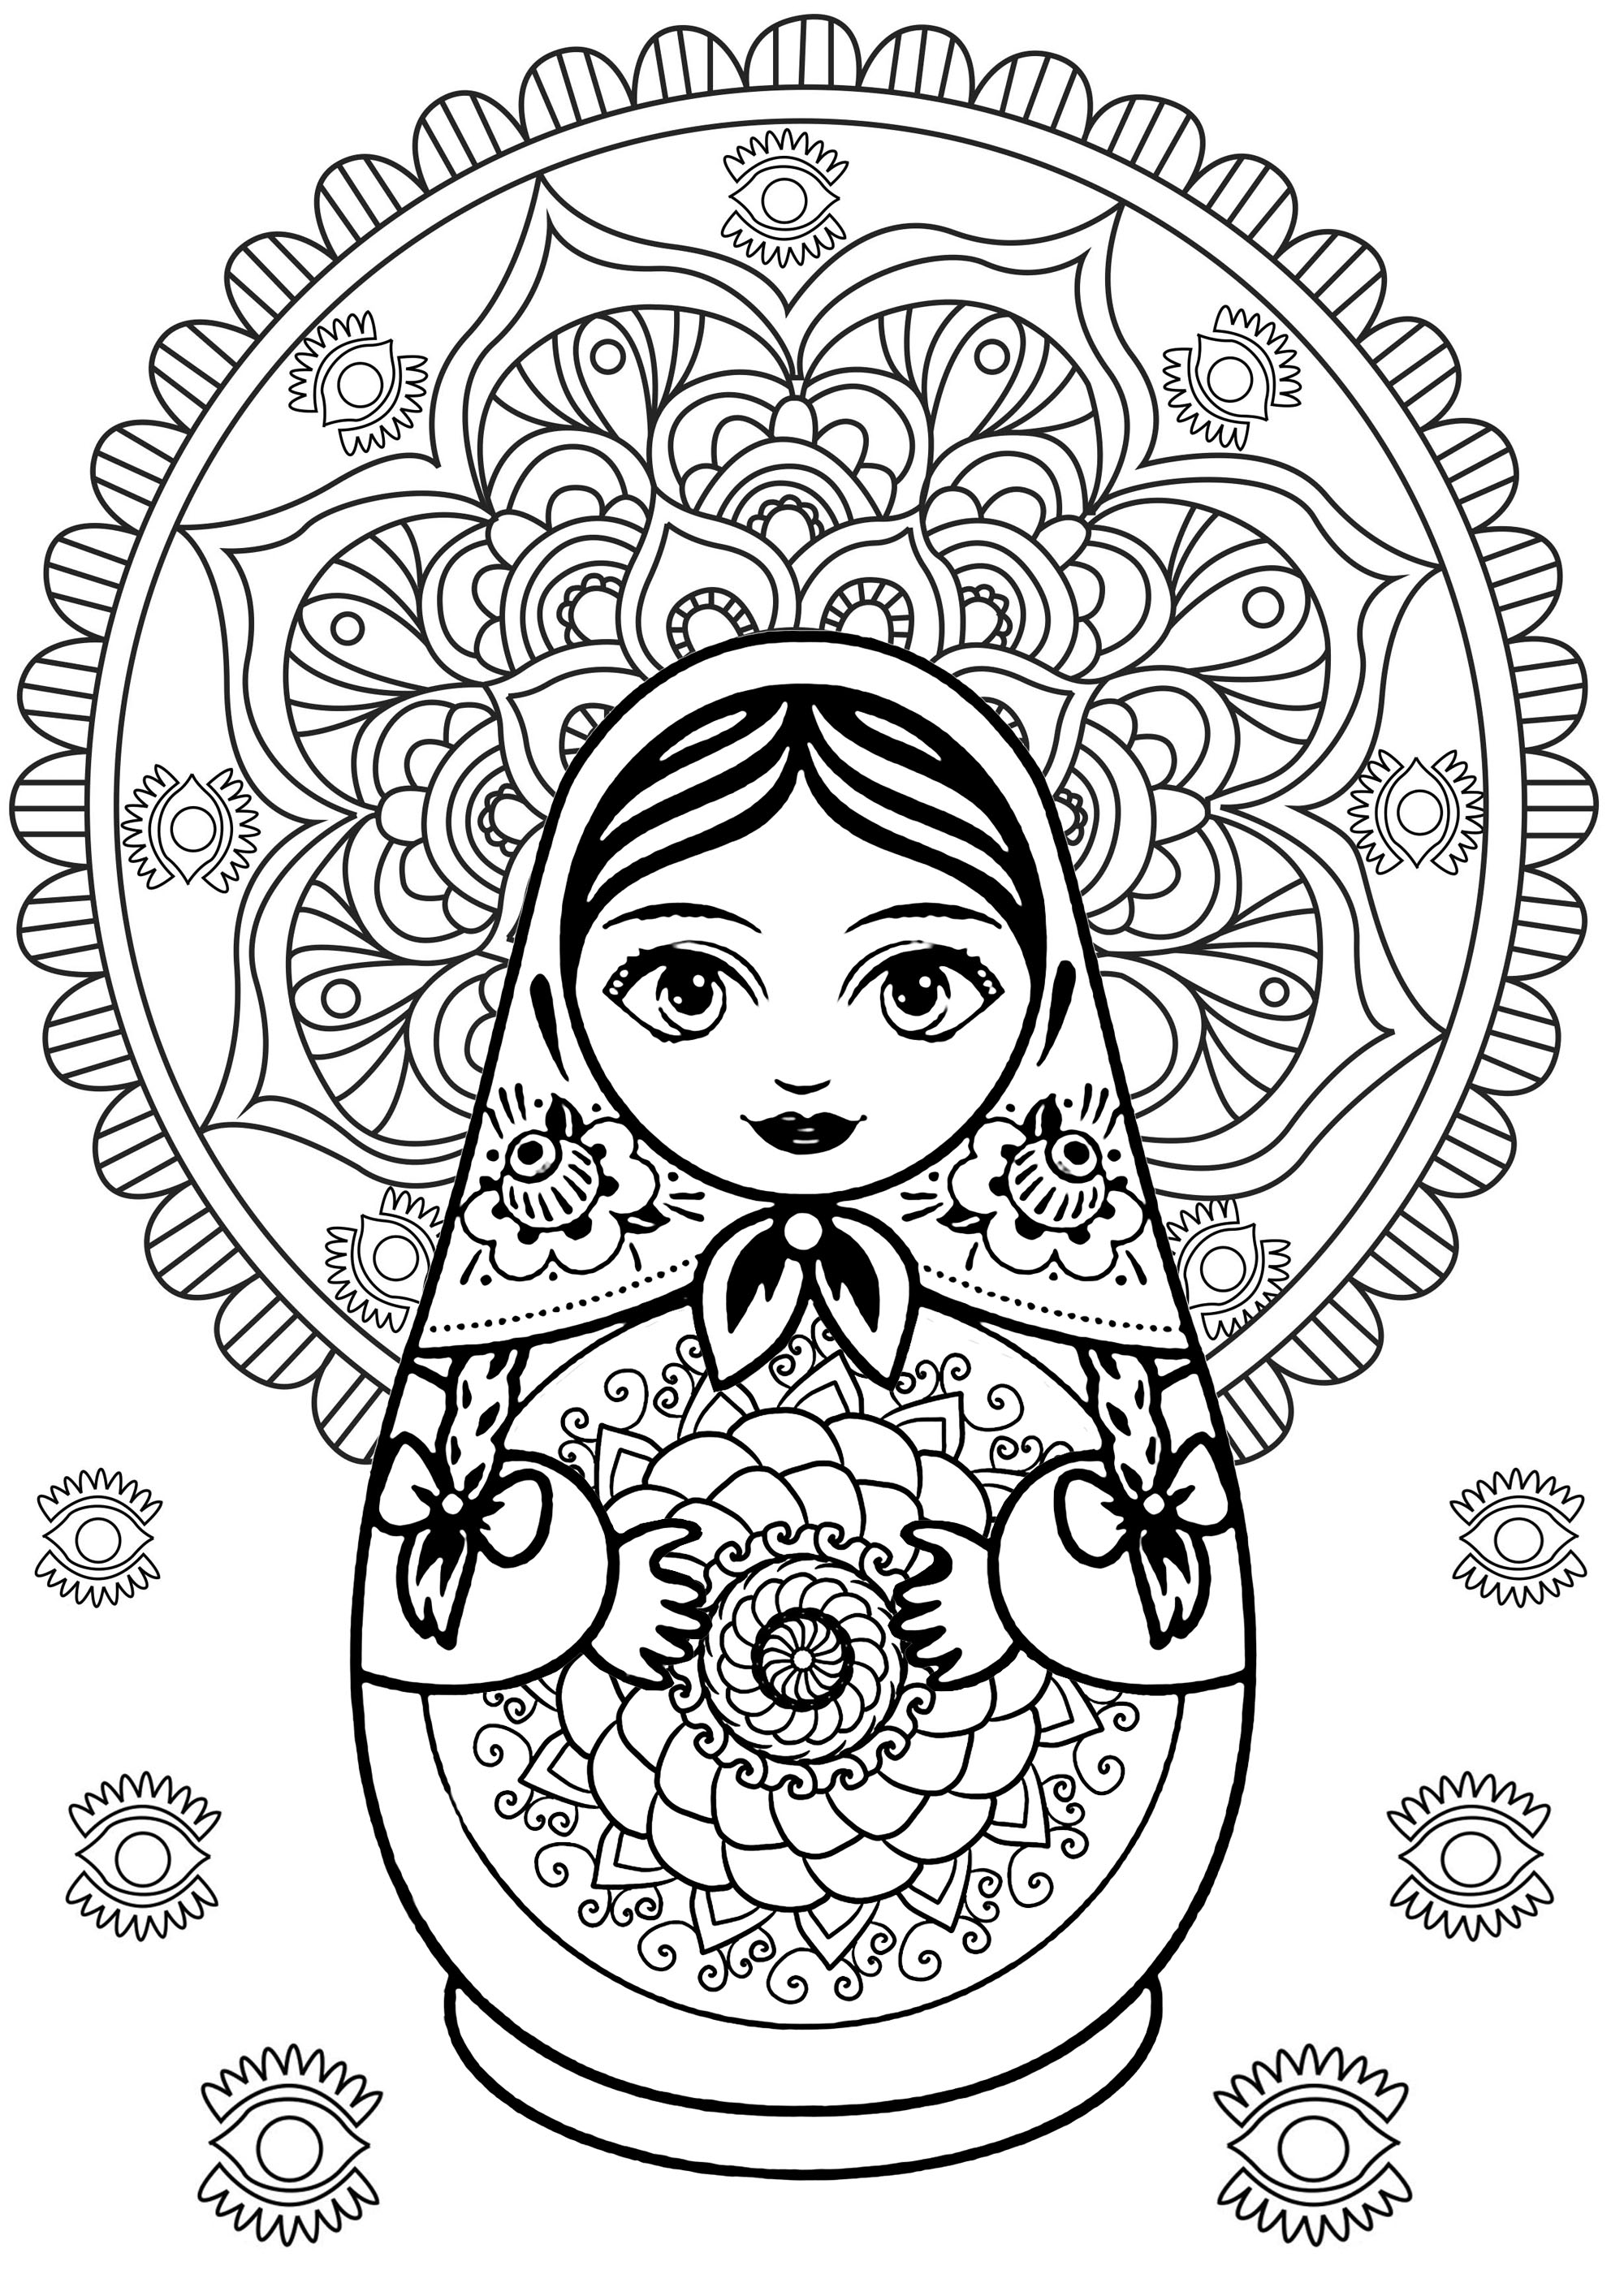 Mandala e boneca russa com elementos originais